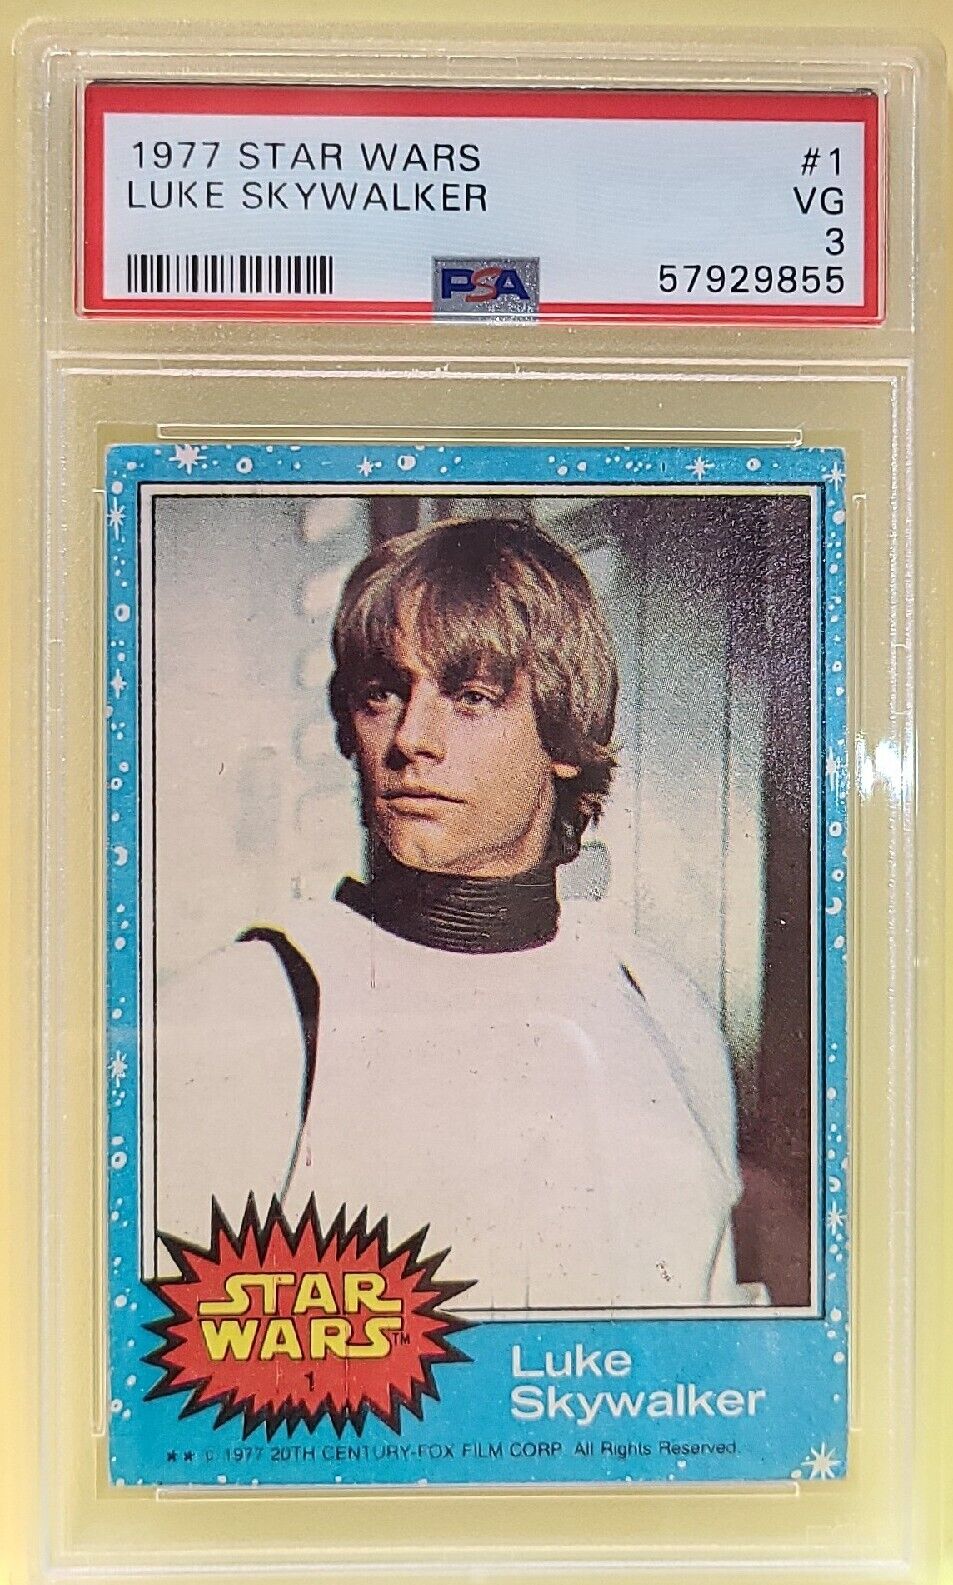 Star Wars Luke Skywalker #1 Rookie RC Card Very Good Series 1 PSA 3 Topps 1977